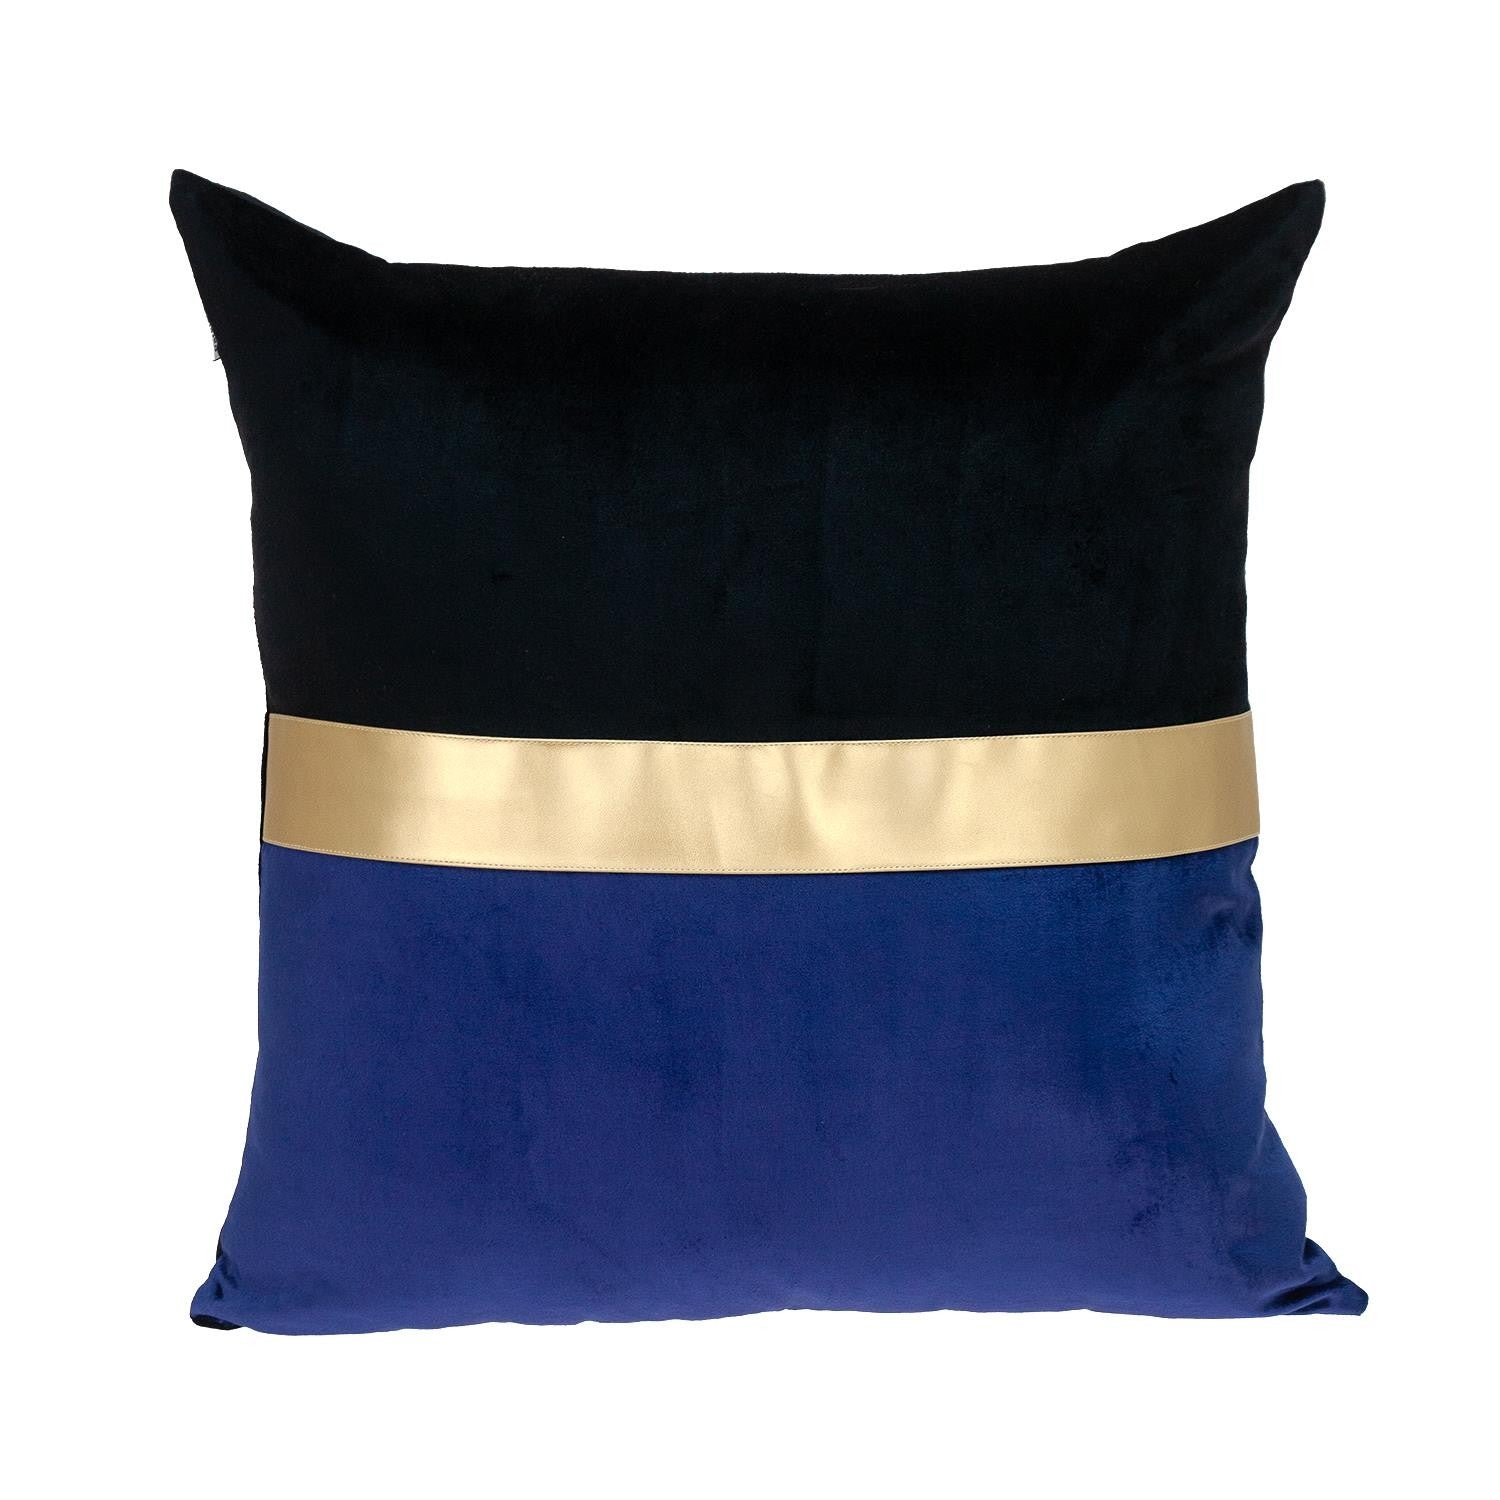 Black Gold and Blue Tufted Velvet Square Pillow